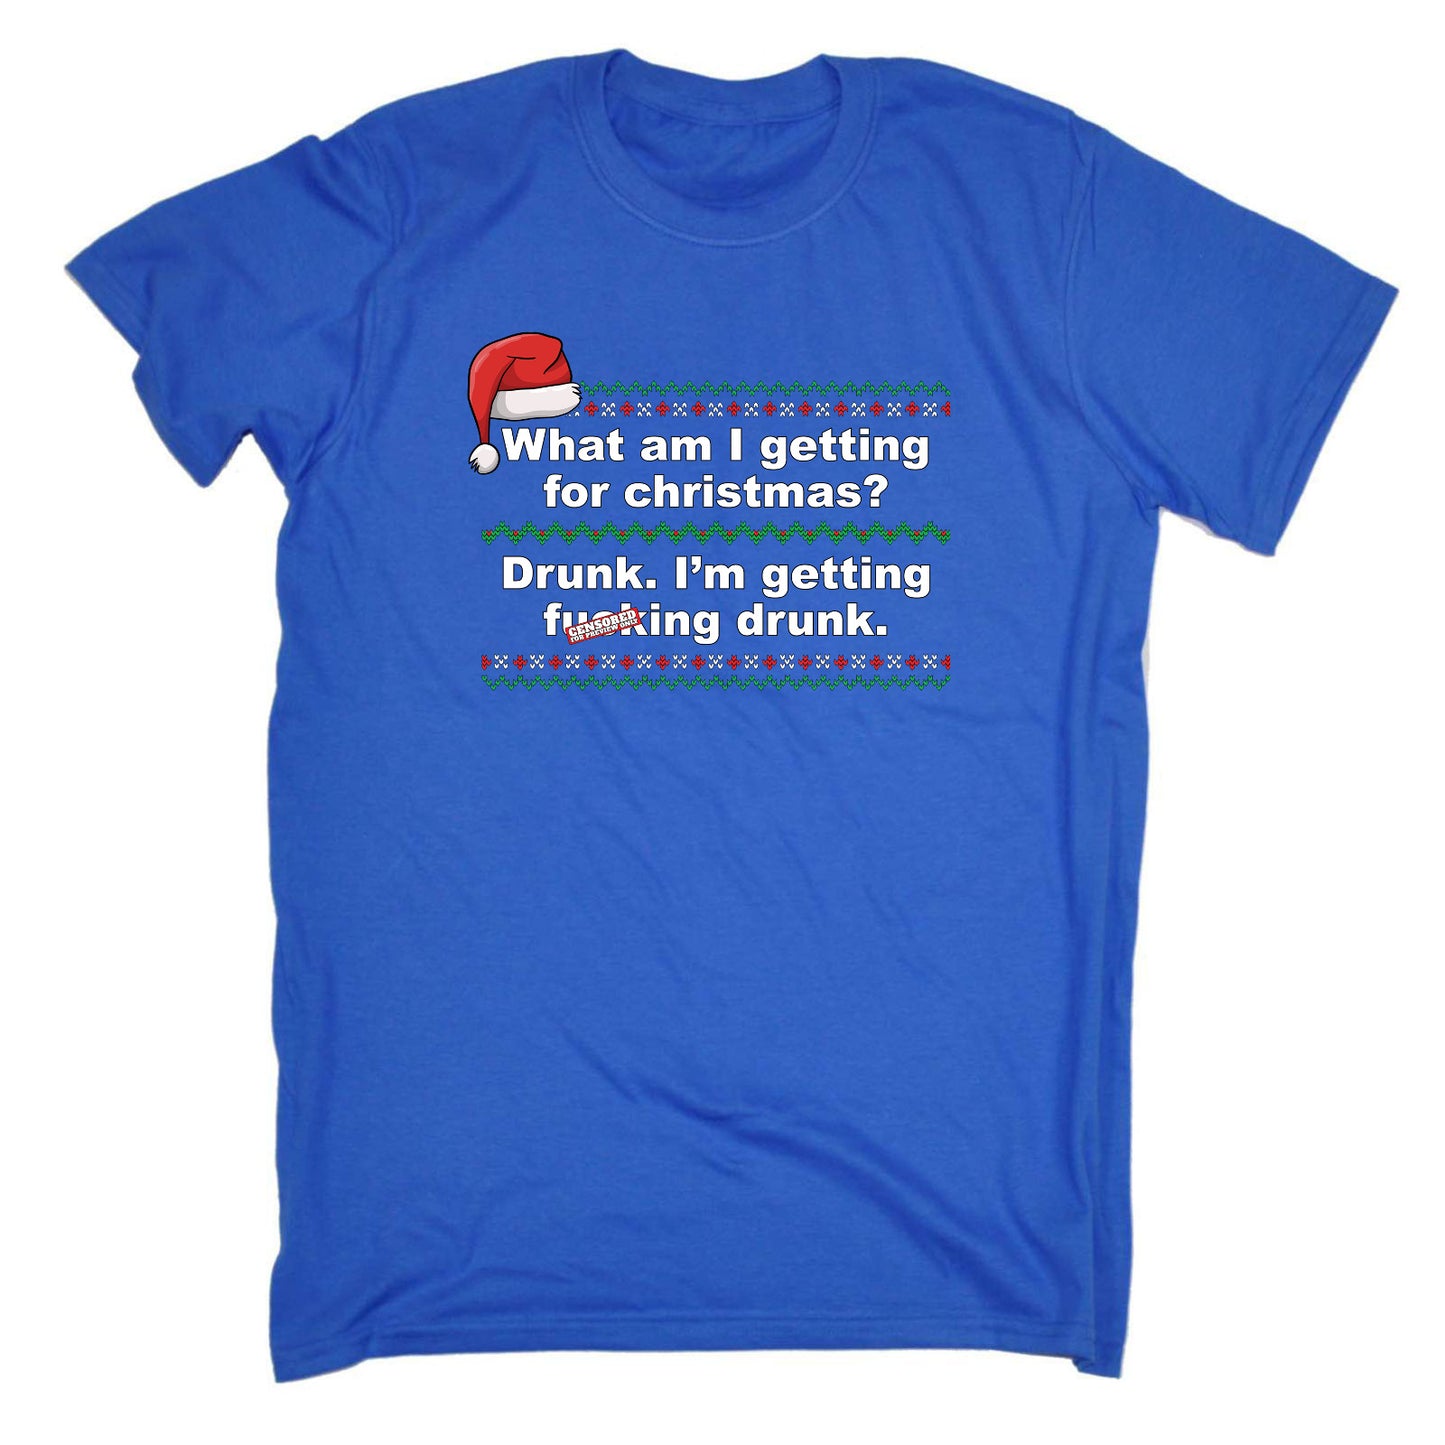 Getting Drunk For Christmas - Mens Funny T-Shirt Tshirts